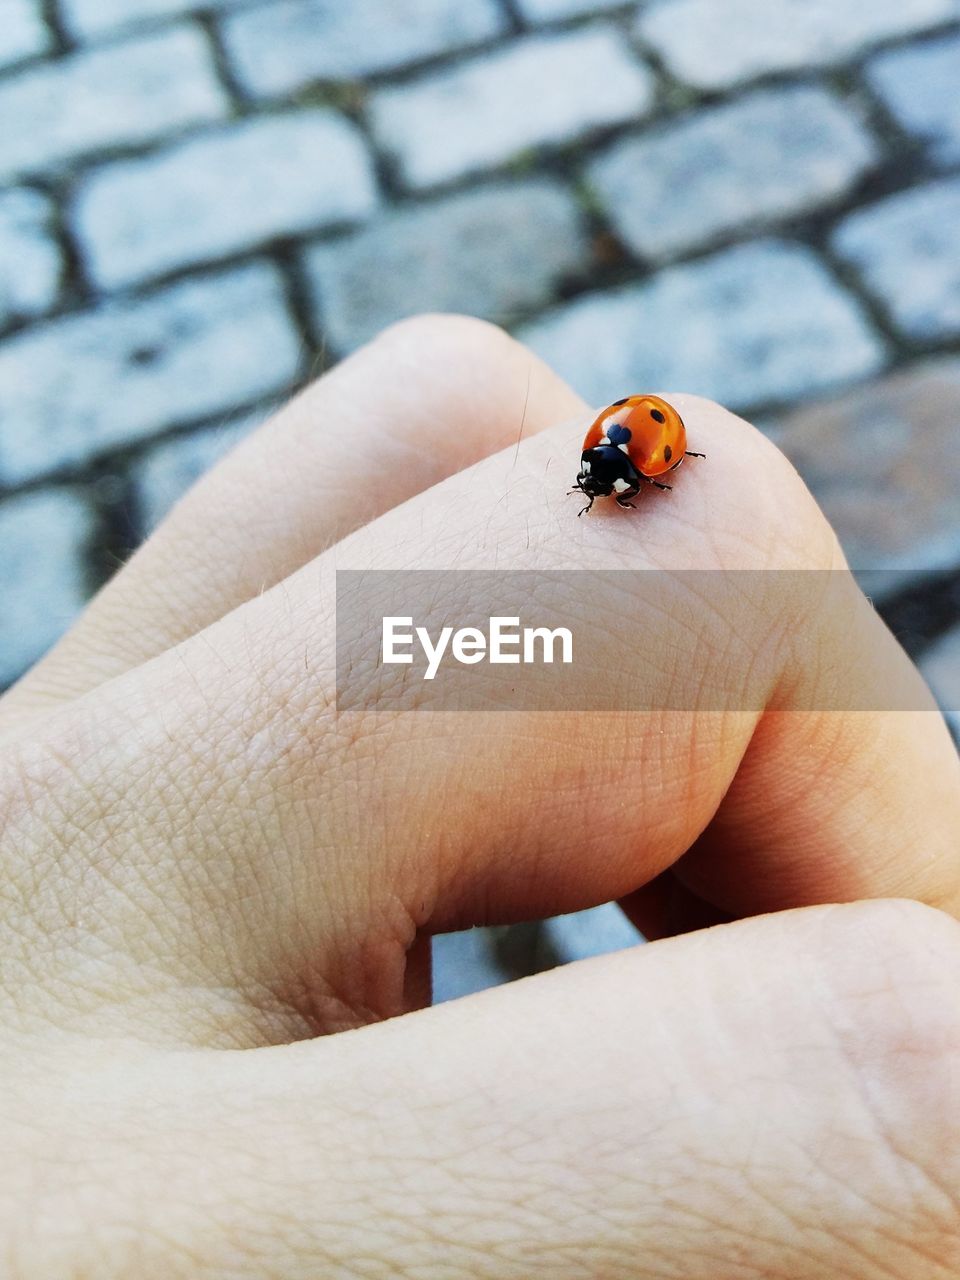 Cropped image of ladybug on hand